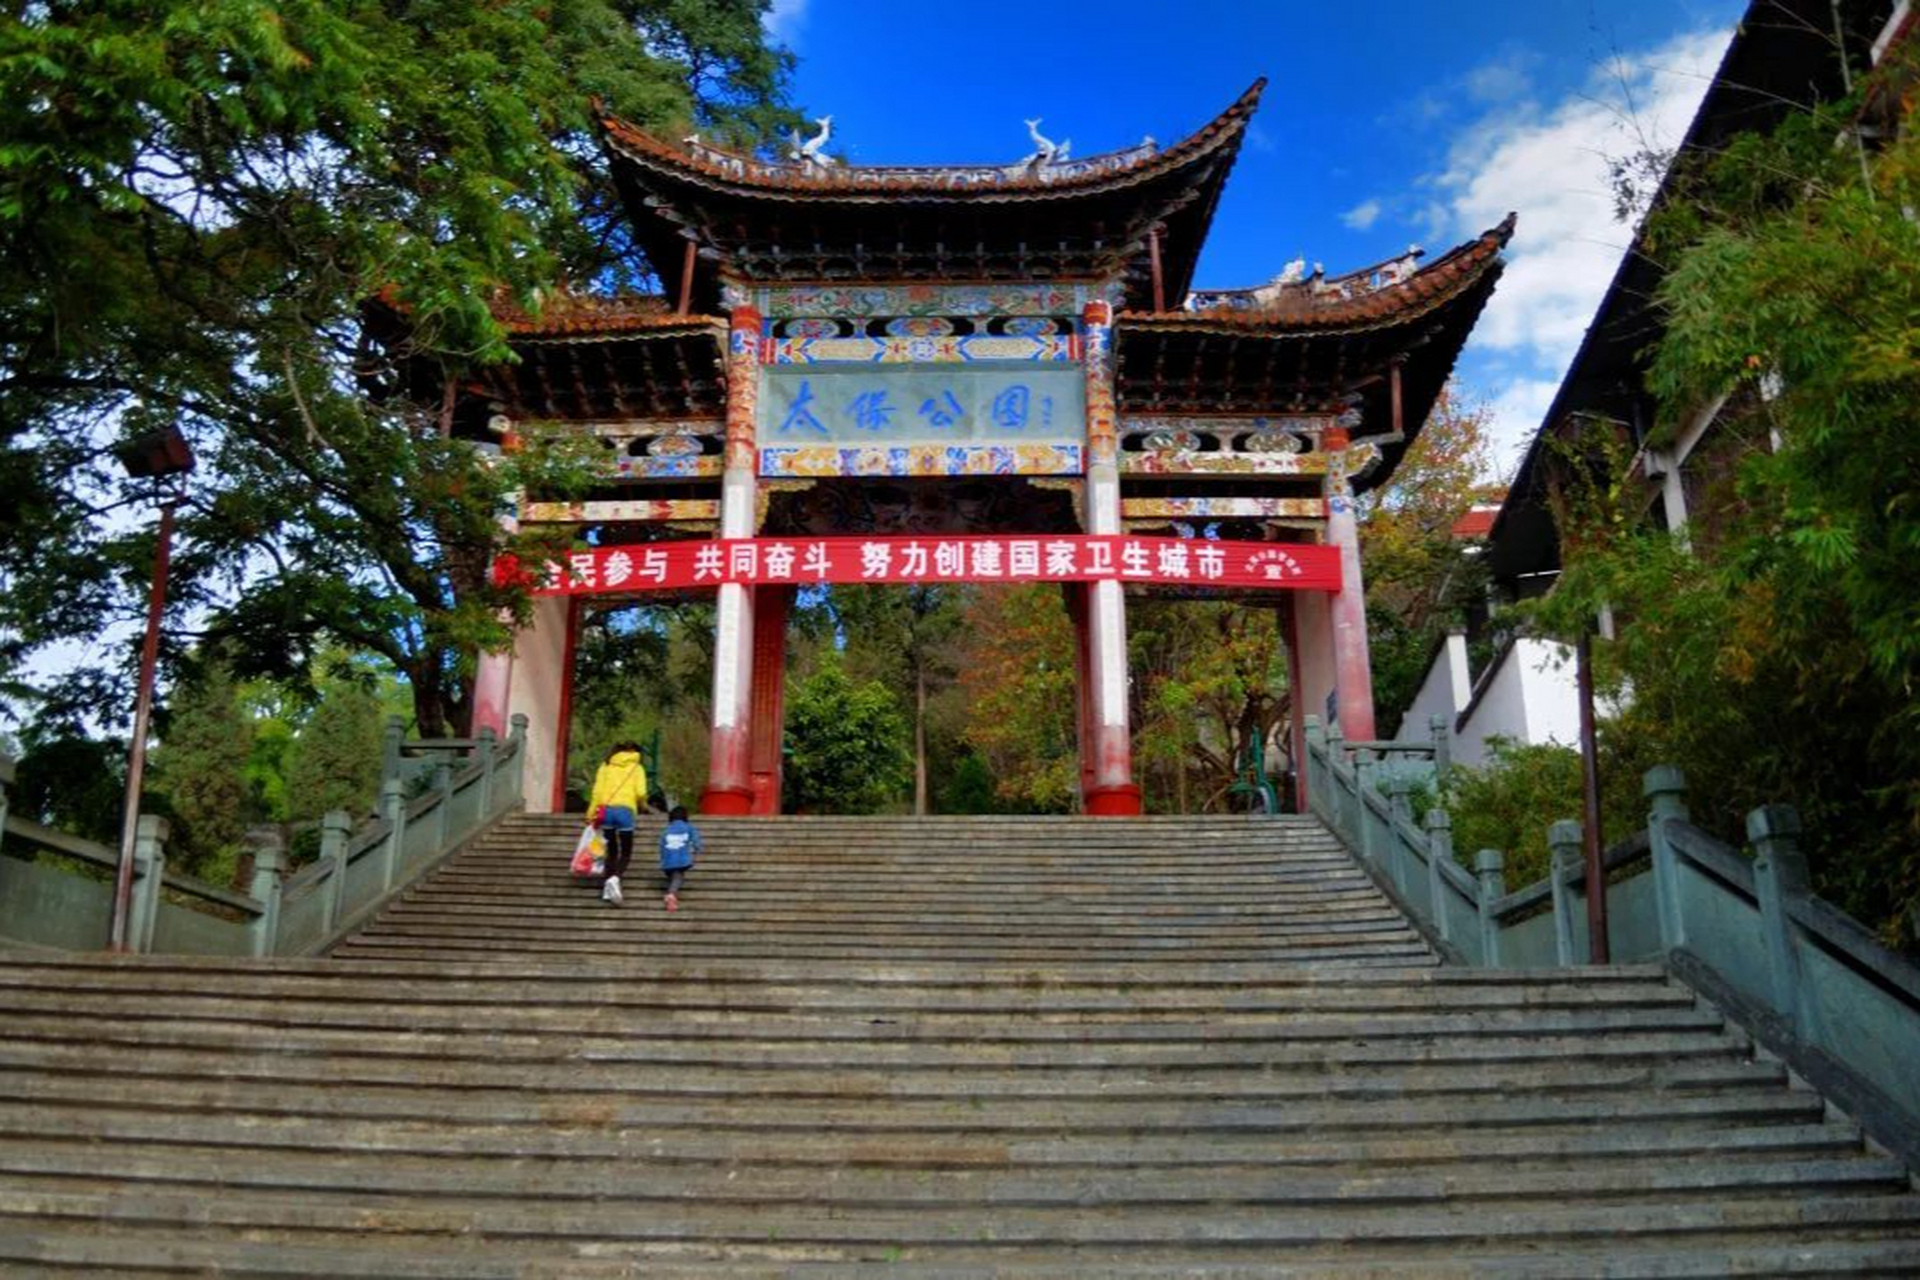 云南太保山森林公园,公园以自然山体森林为主要景色,面积达到了100